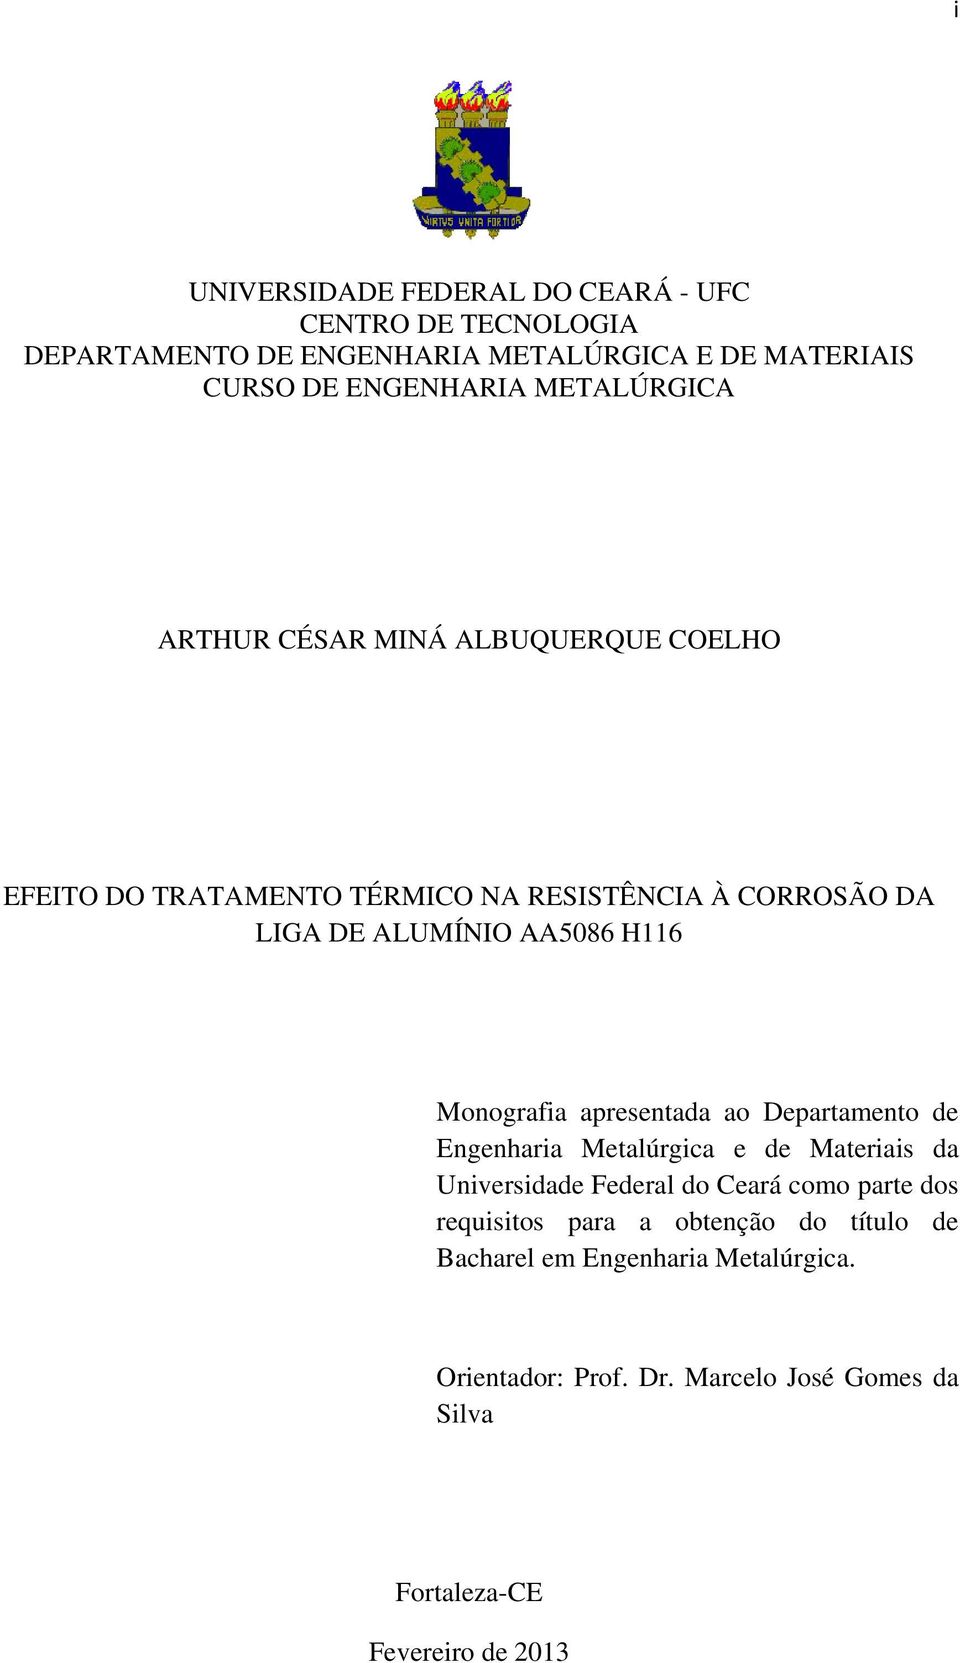 Monografia apresentada ao Departamento de Engenharia Metalúrgica e de Materiais da Universidade Federal do Ceará como parte dos requisitos